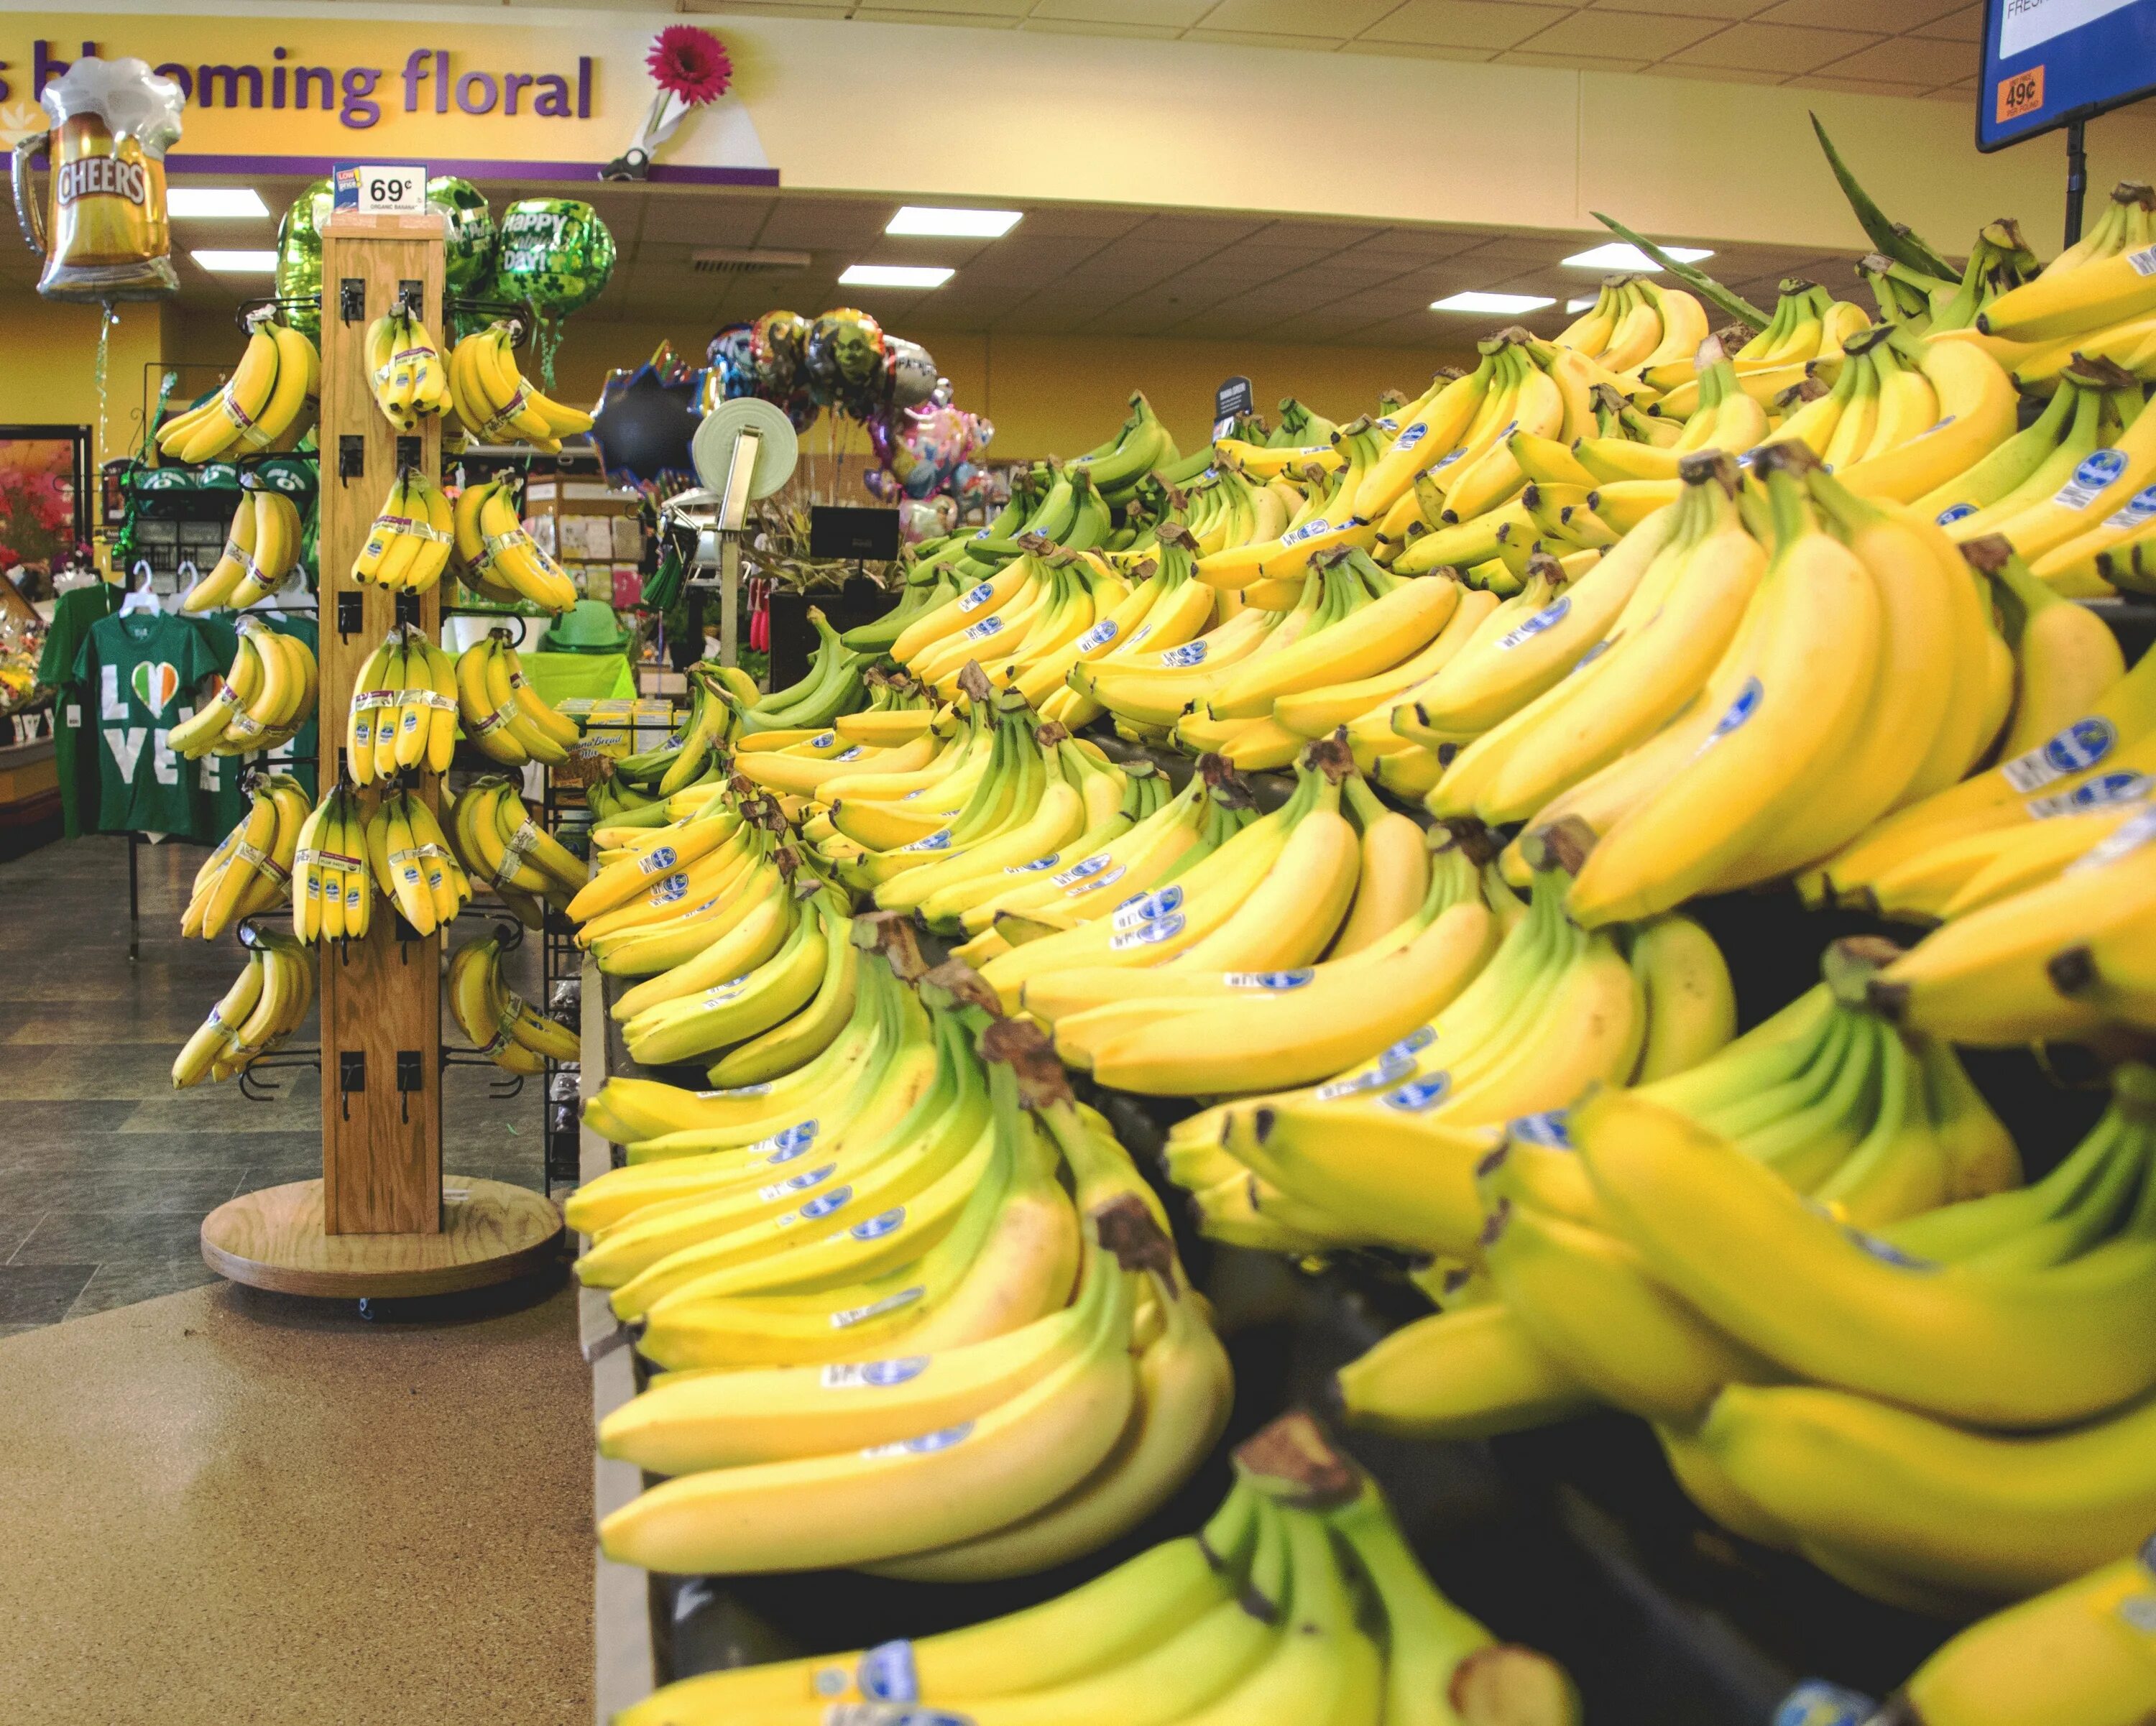 Где купить банан. Выкладка бананов в магазине. Бананы в магазине. Бананы на прилавке. Бананы в супермаркете.